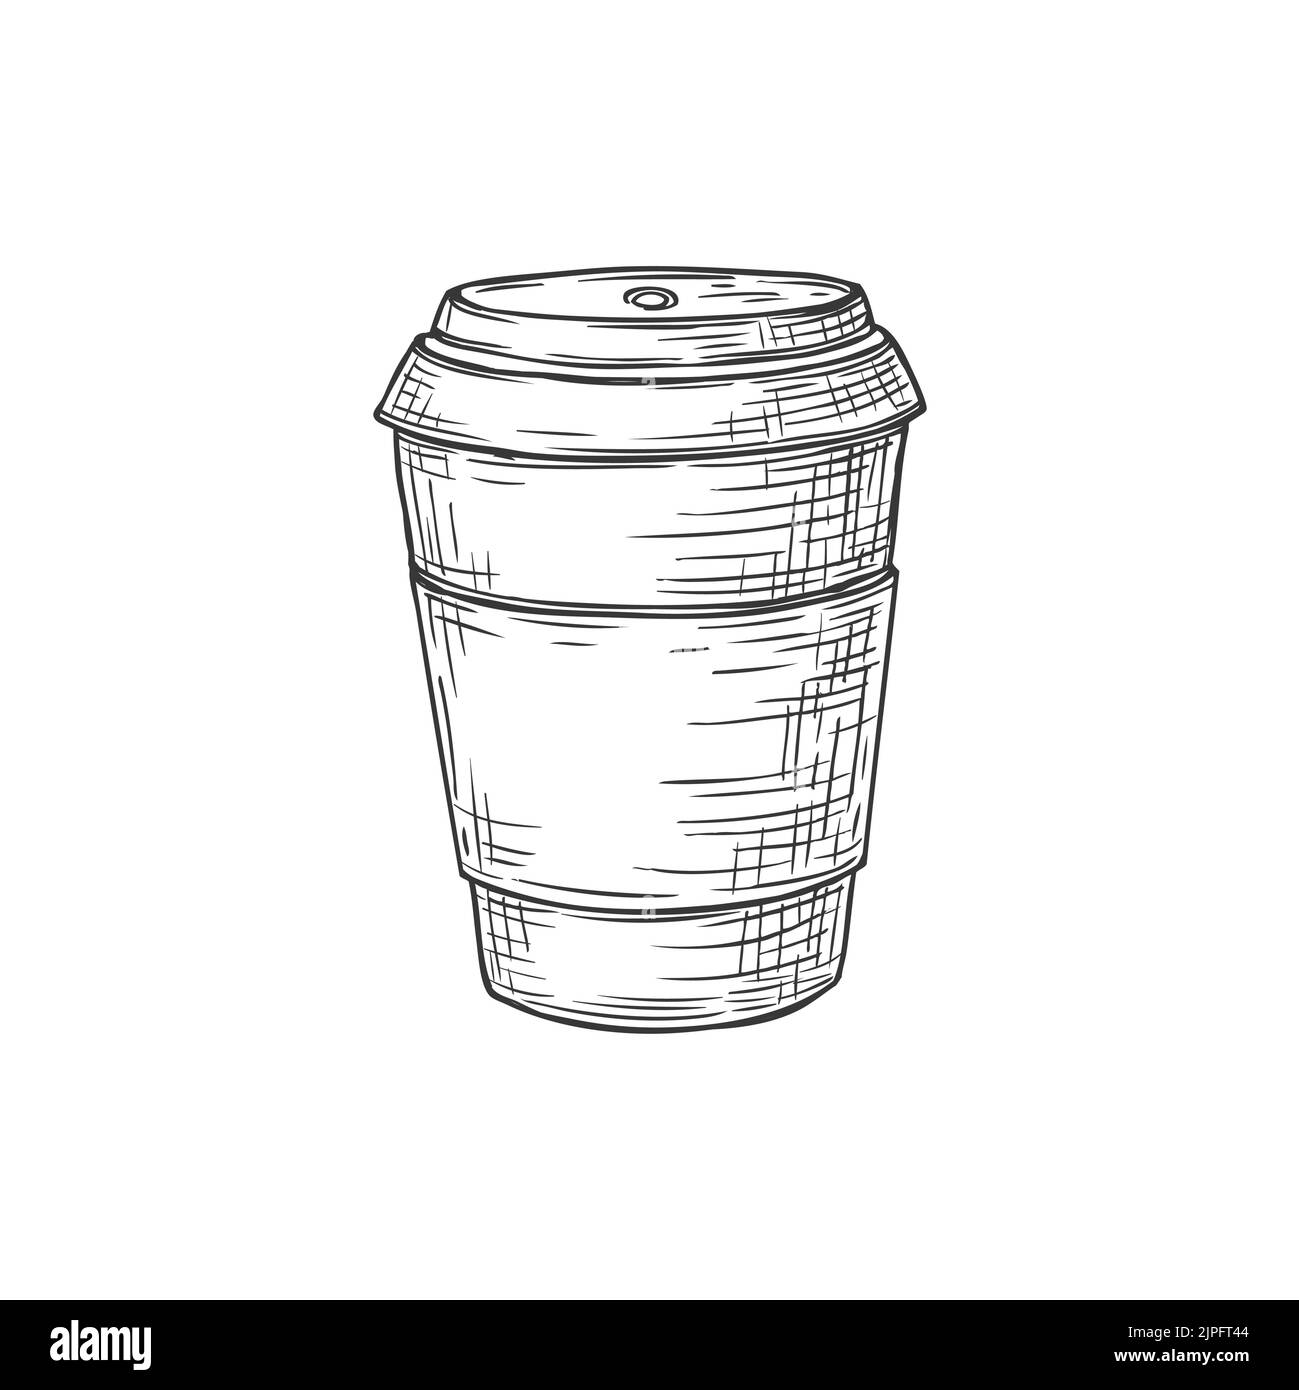 Kaffeetasse mit Deckel isolierte Getränkepackung mit einfarbiger Skizze. Vector Takeaway Getränk in Plastikglas, Nachbau von Takeout Getränk. Einweg-Tee oder Kakao-Tasse mit Deckel, heiße Getränke-Paket Stock Vektor